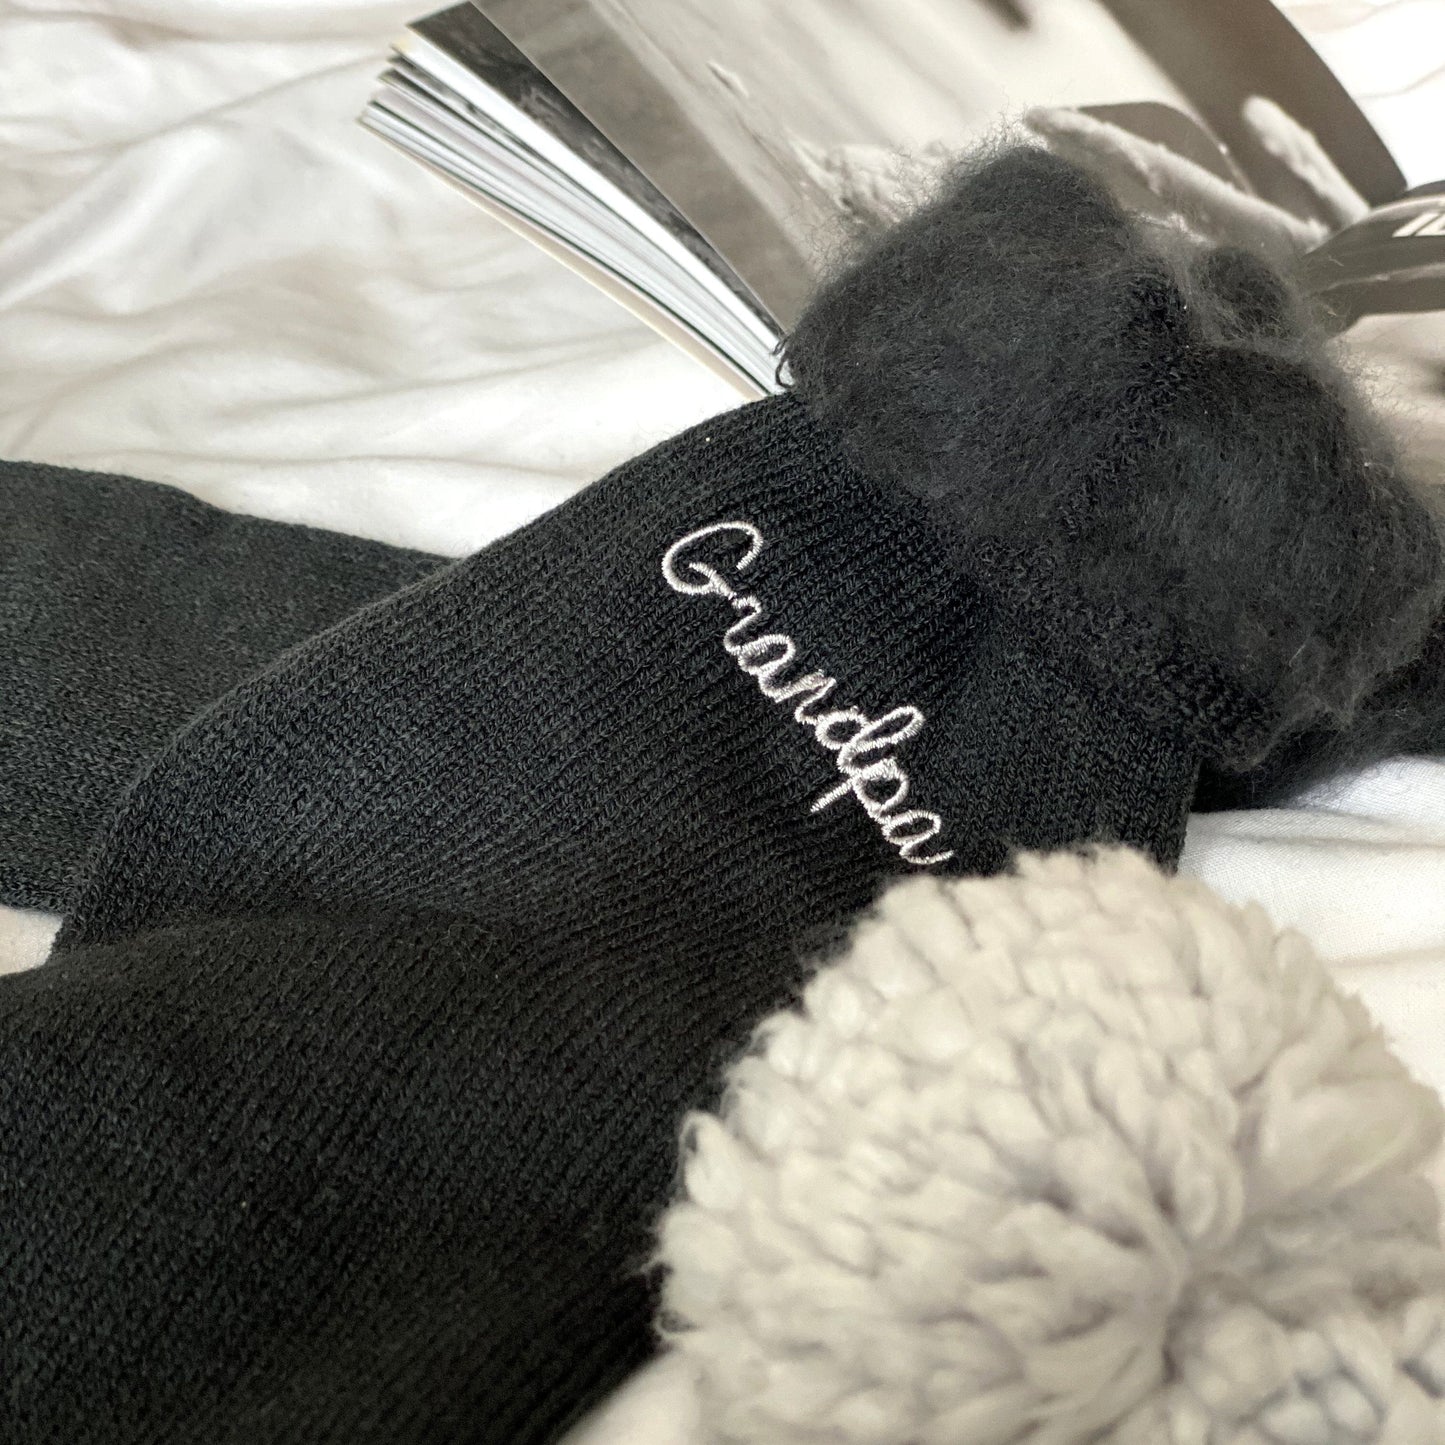 Personalised Bed Socks